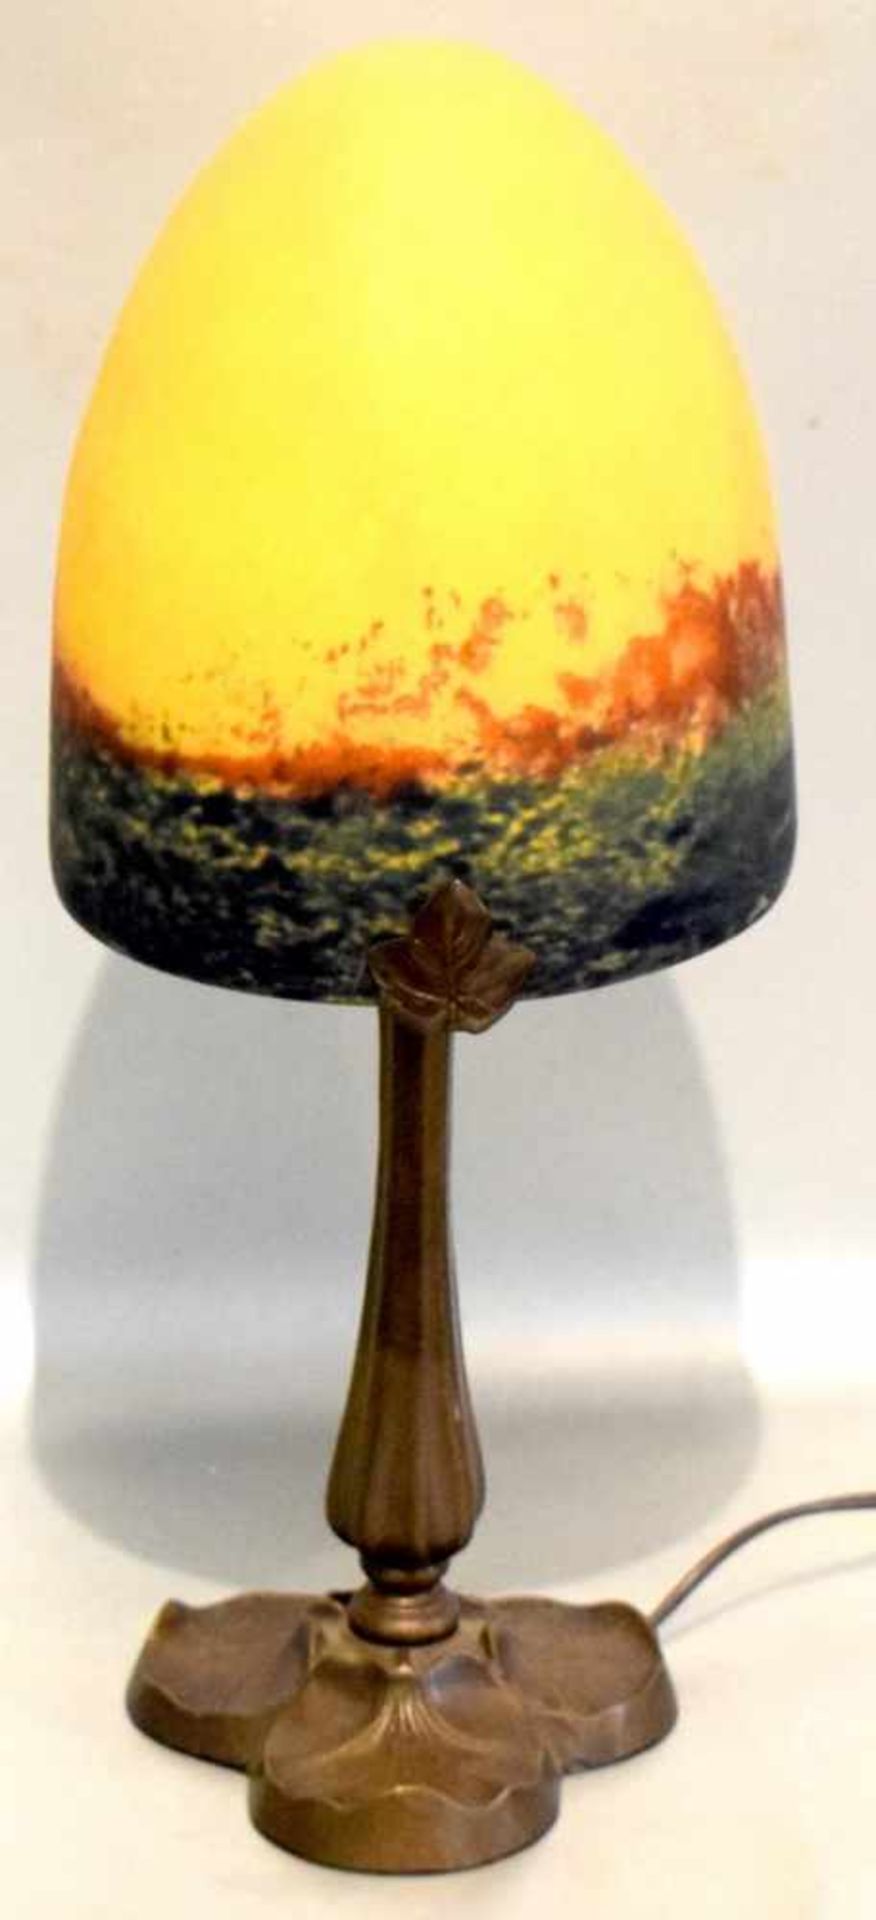 Tischlampe im Jugendstil-Stil, 1-lichtig, Metallfuß, Glasschirm mit bunt verlaufenden Farben, in